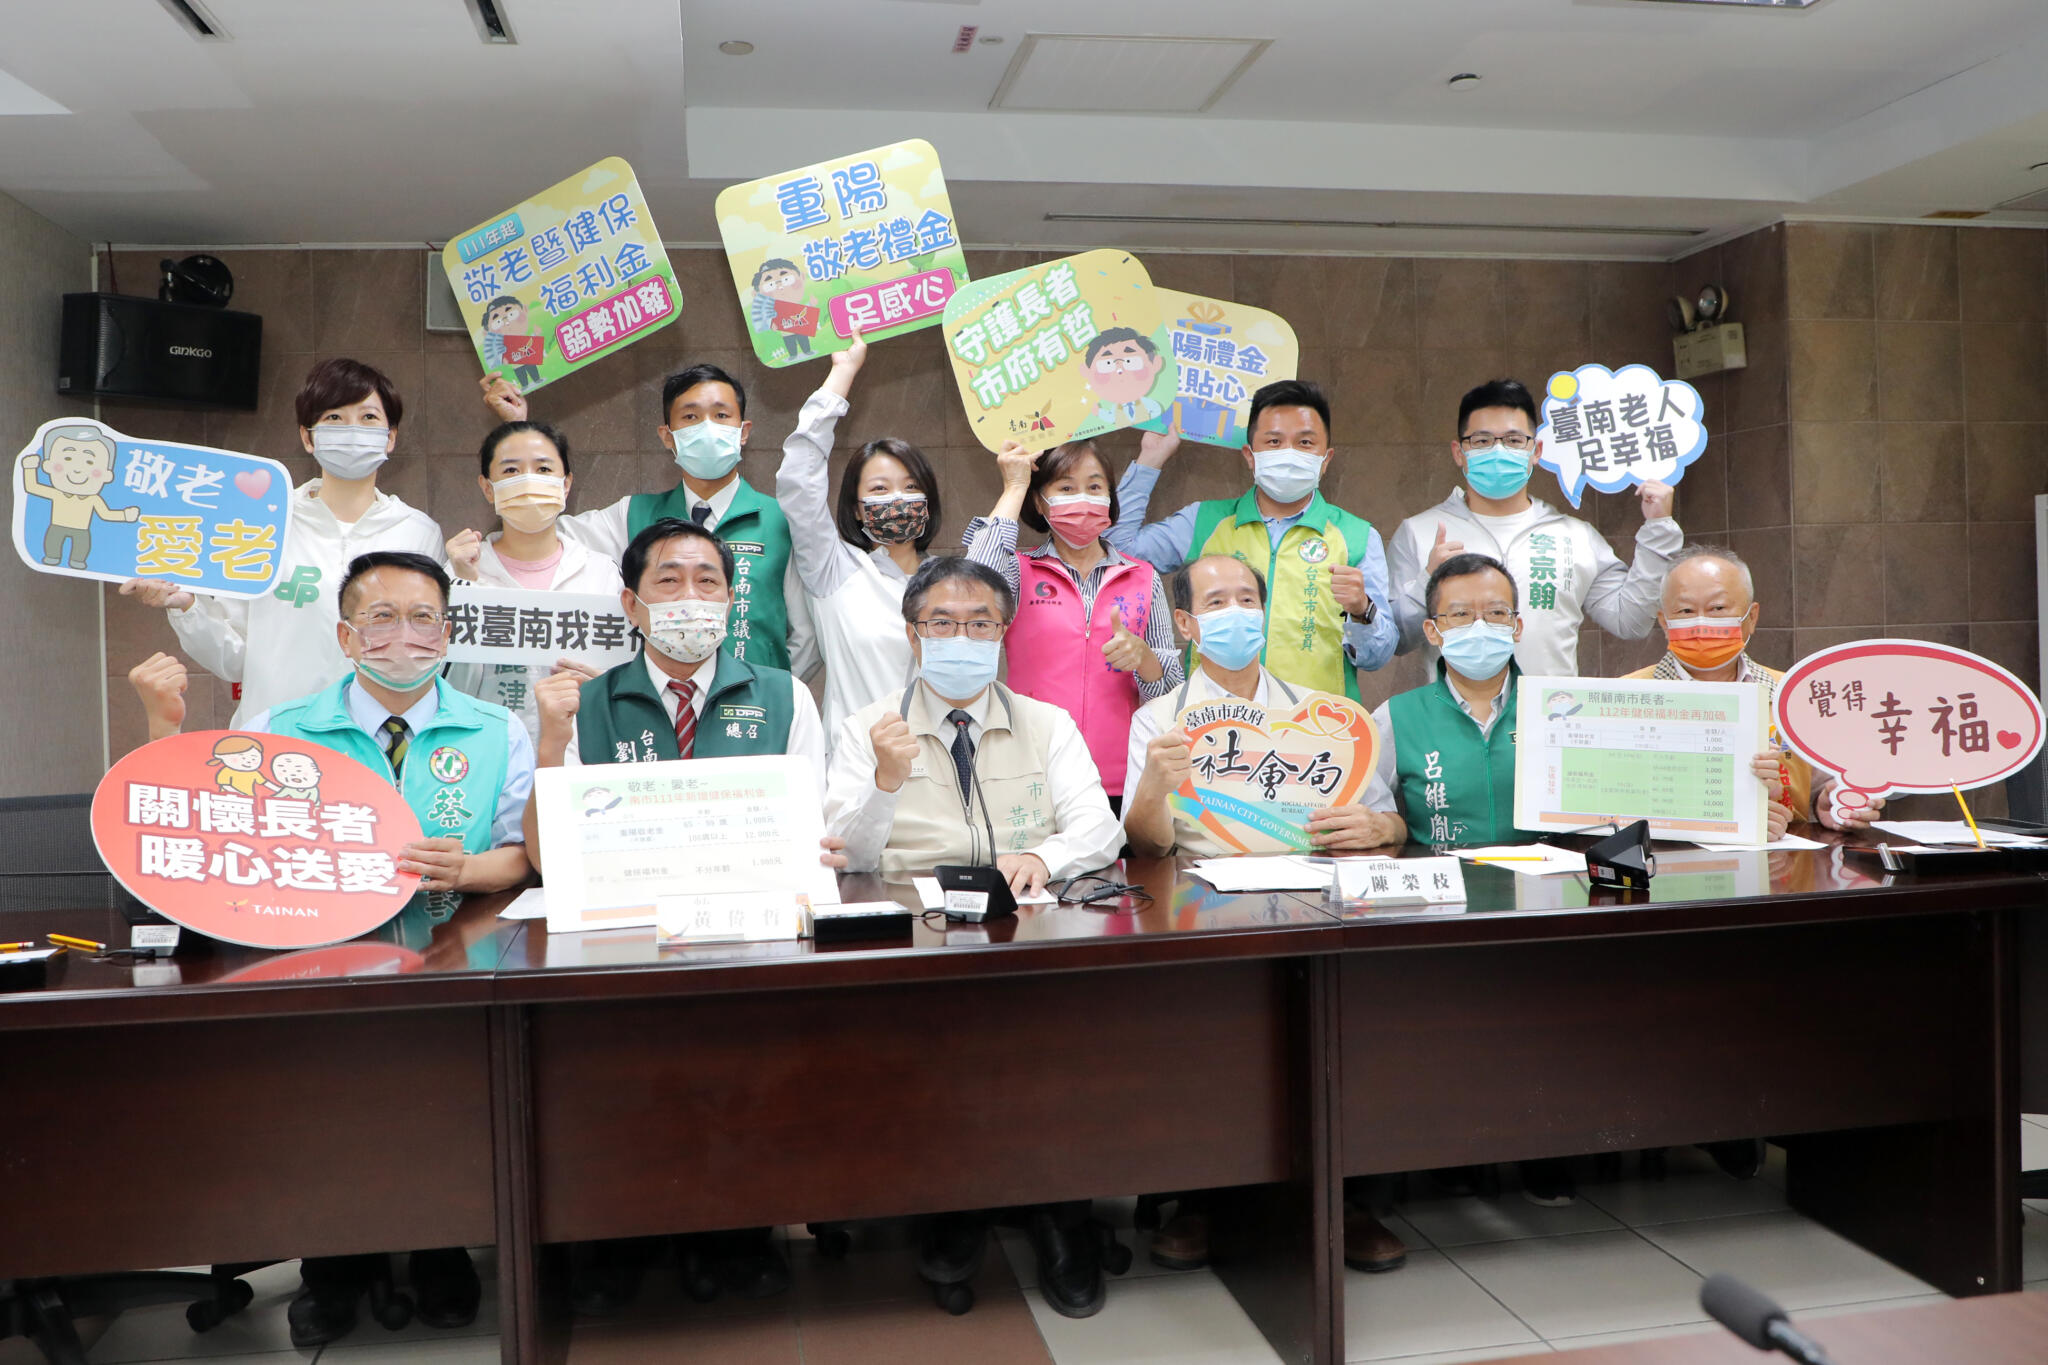 黃偉哲宣布明年加碼健保福利金 擴大照顧台南經濟弱勢長者